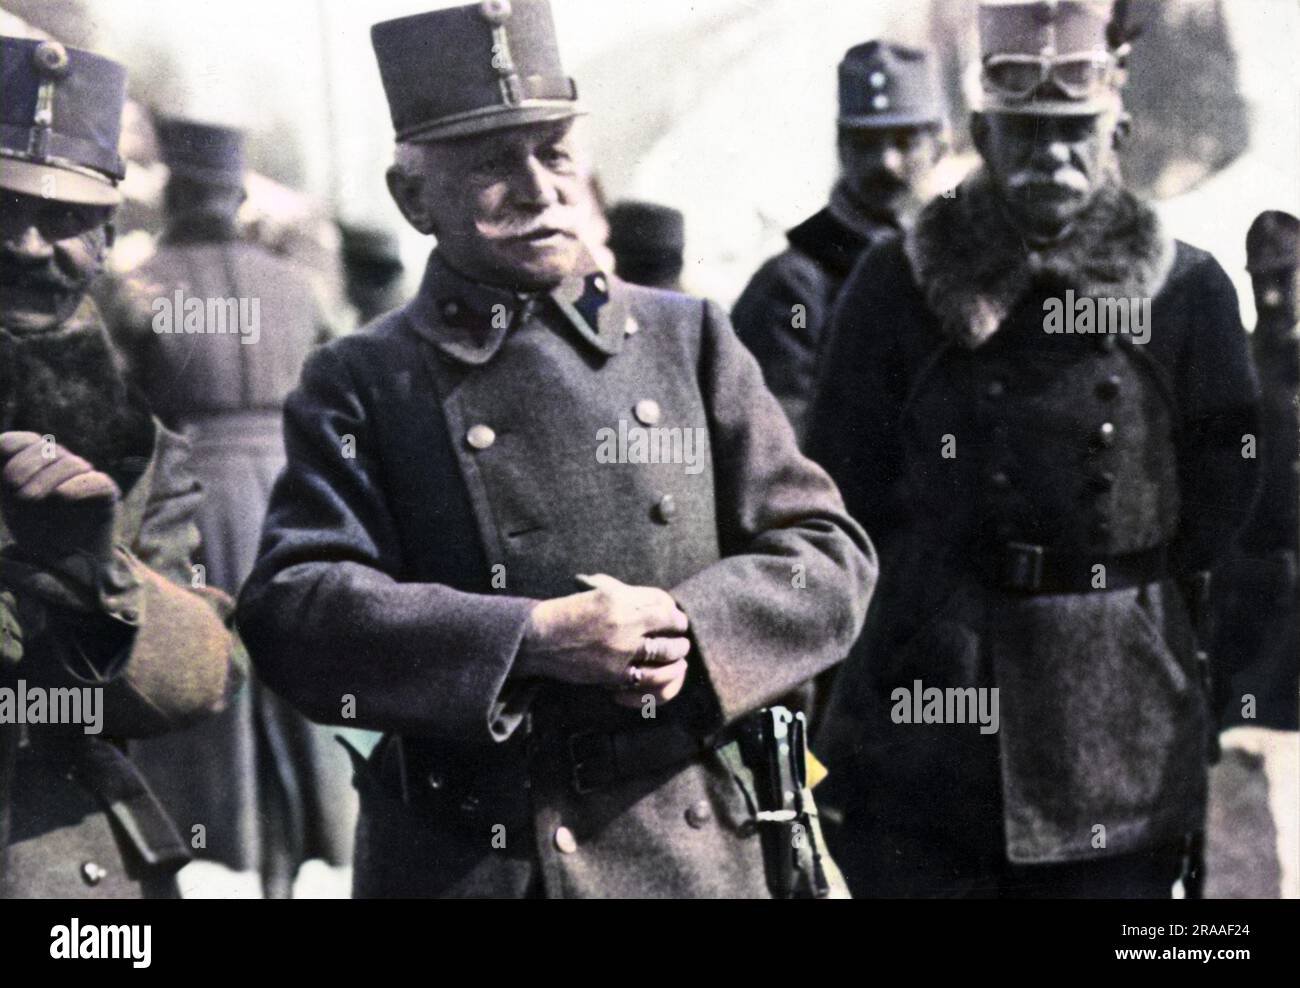 Le comte Franz Conrad von Hotzendorf (1852-1925), chef d'état-major général de l'armée austro-hongroise au début de la première Guerre mondiale. Vu ici avec son chef de cabinet, le général Muller. Date: Vers 1914 Banque D'Images